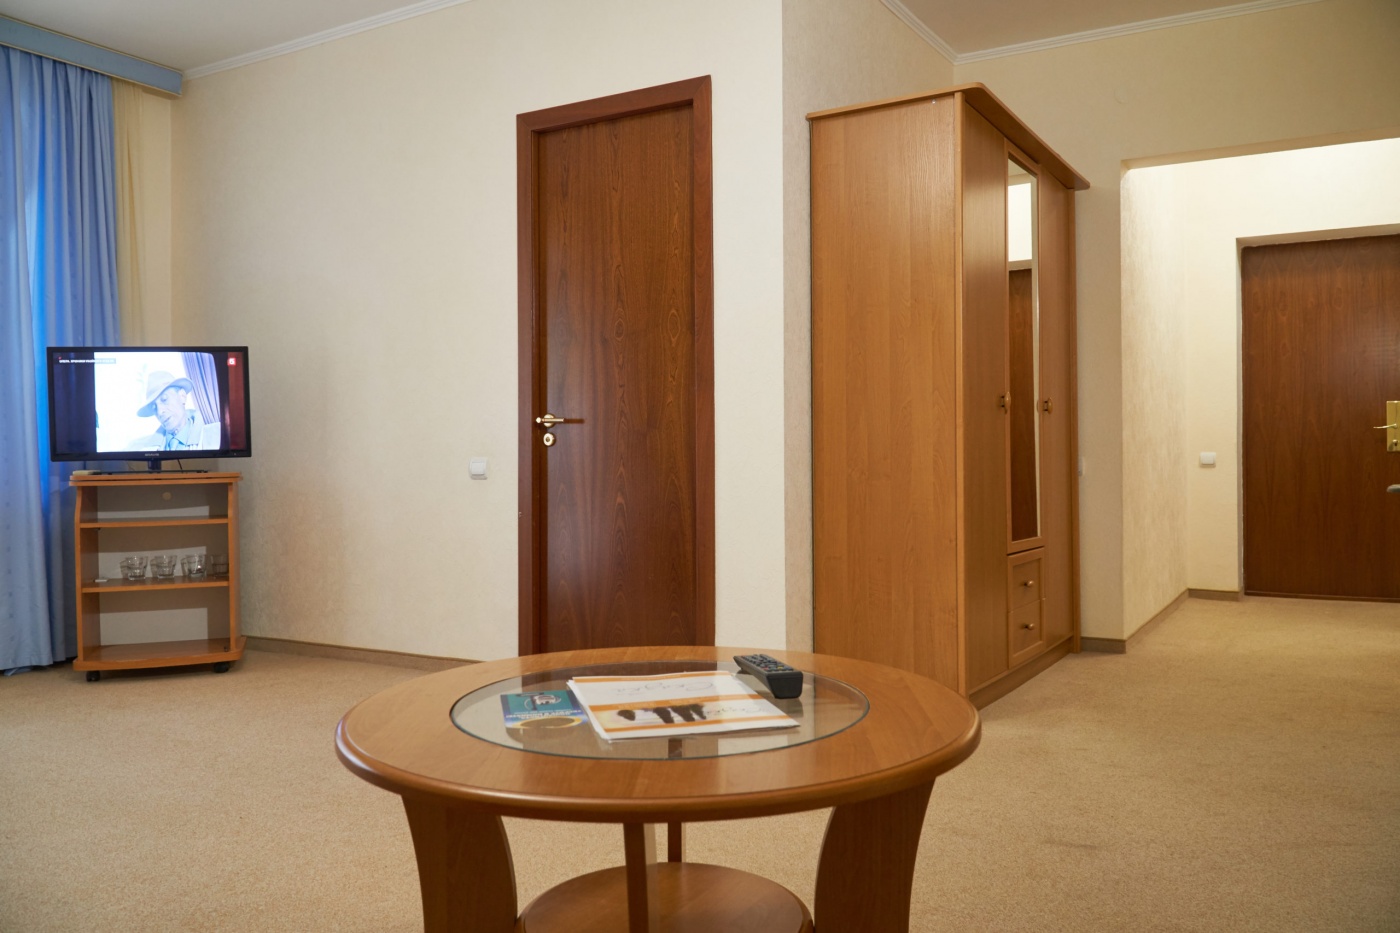  Отель «Сказка» Республика Крым Апартаменты класса Люкс 2-комнатный, фото 5